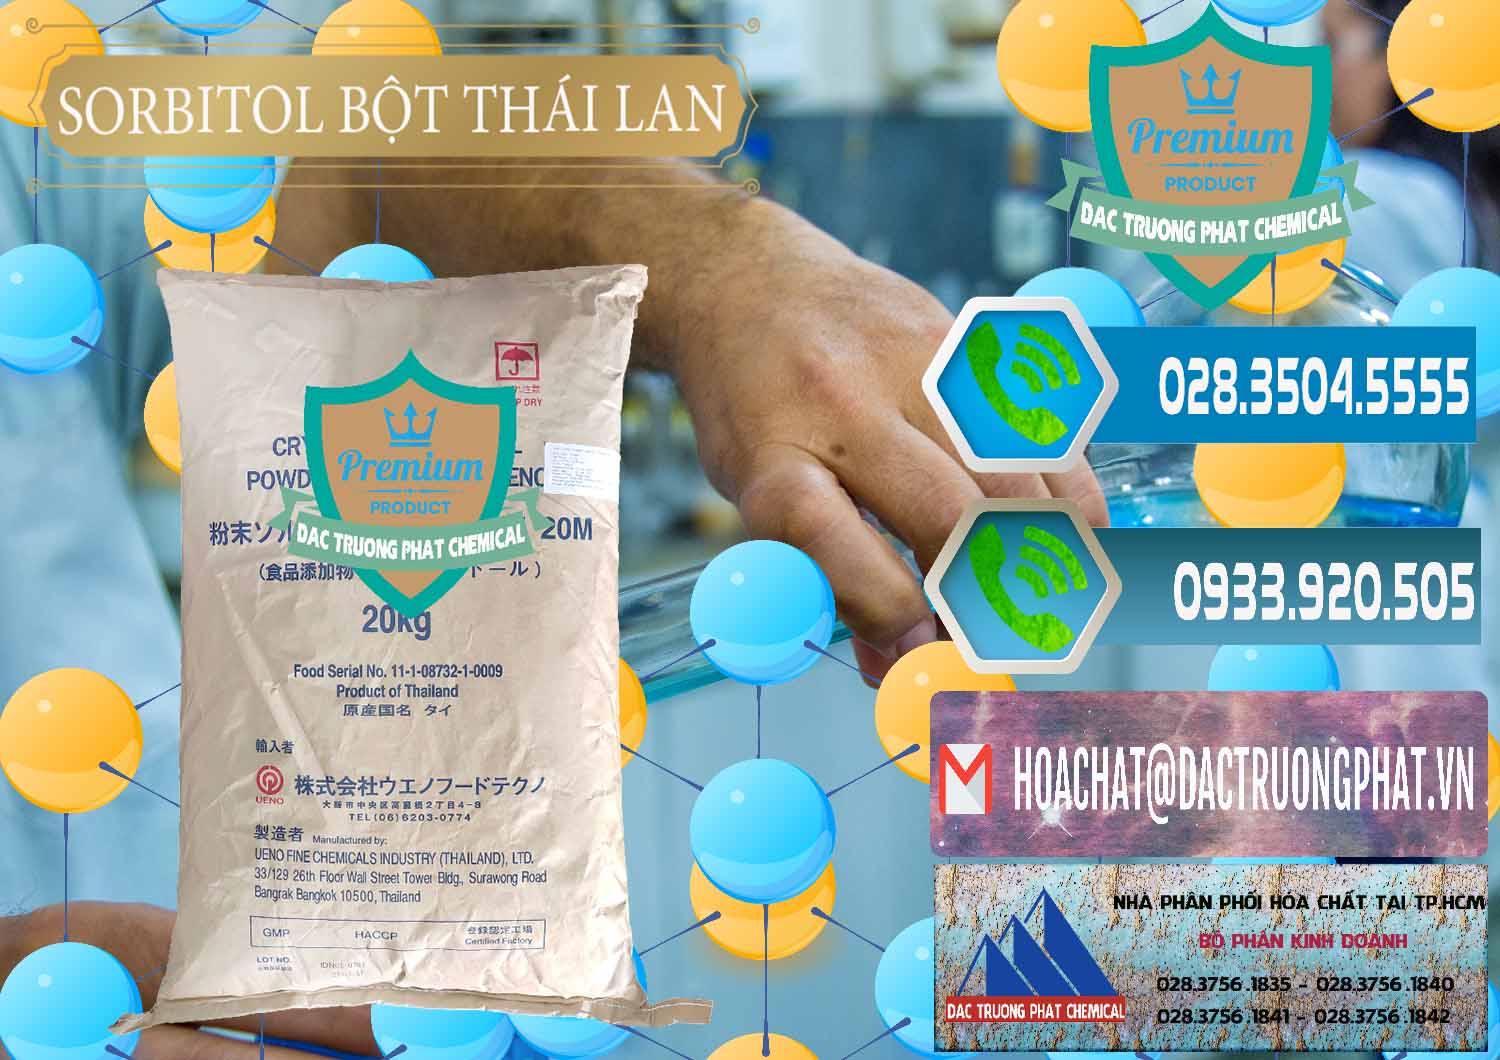 Cty chuyên cung cấp và bán D-Sorbitol Bột - C6H14O6 Food Grade Thái Lan Thailand - 0322 - Chuyên kinh doanh và phân phối hóa chất tại TP.HCM - congtyhoachat.net